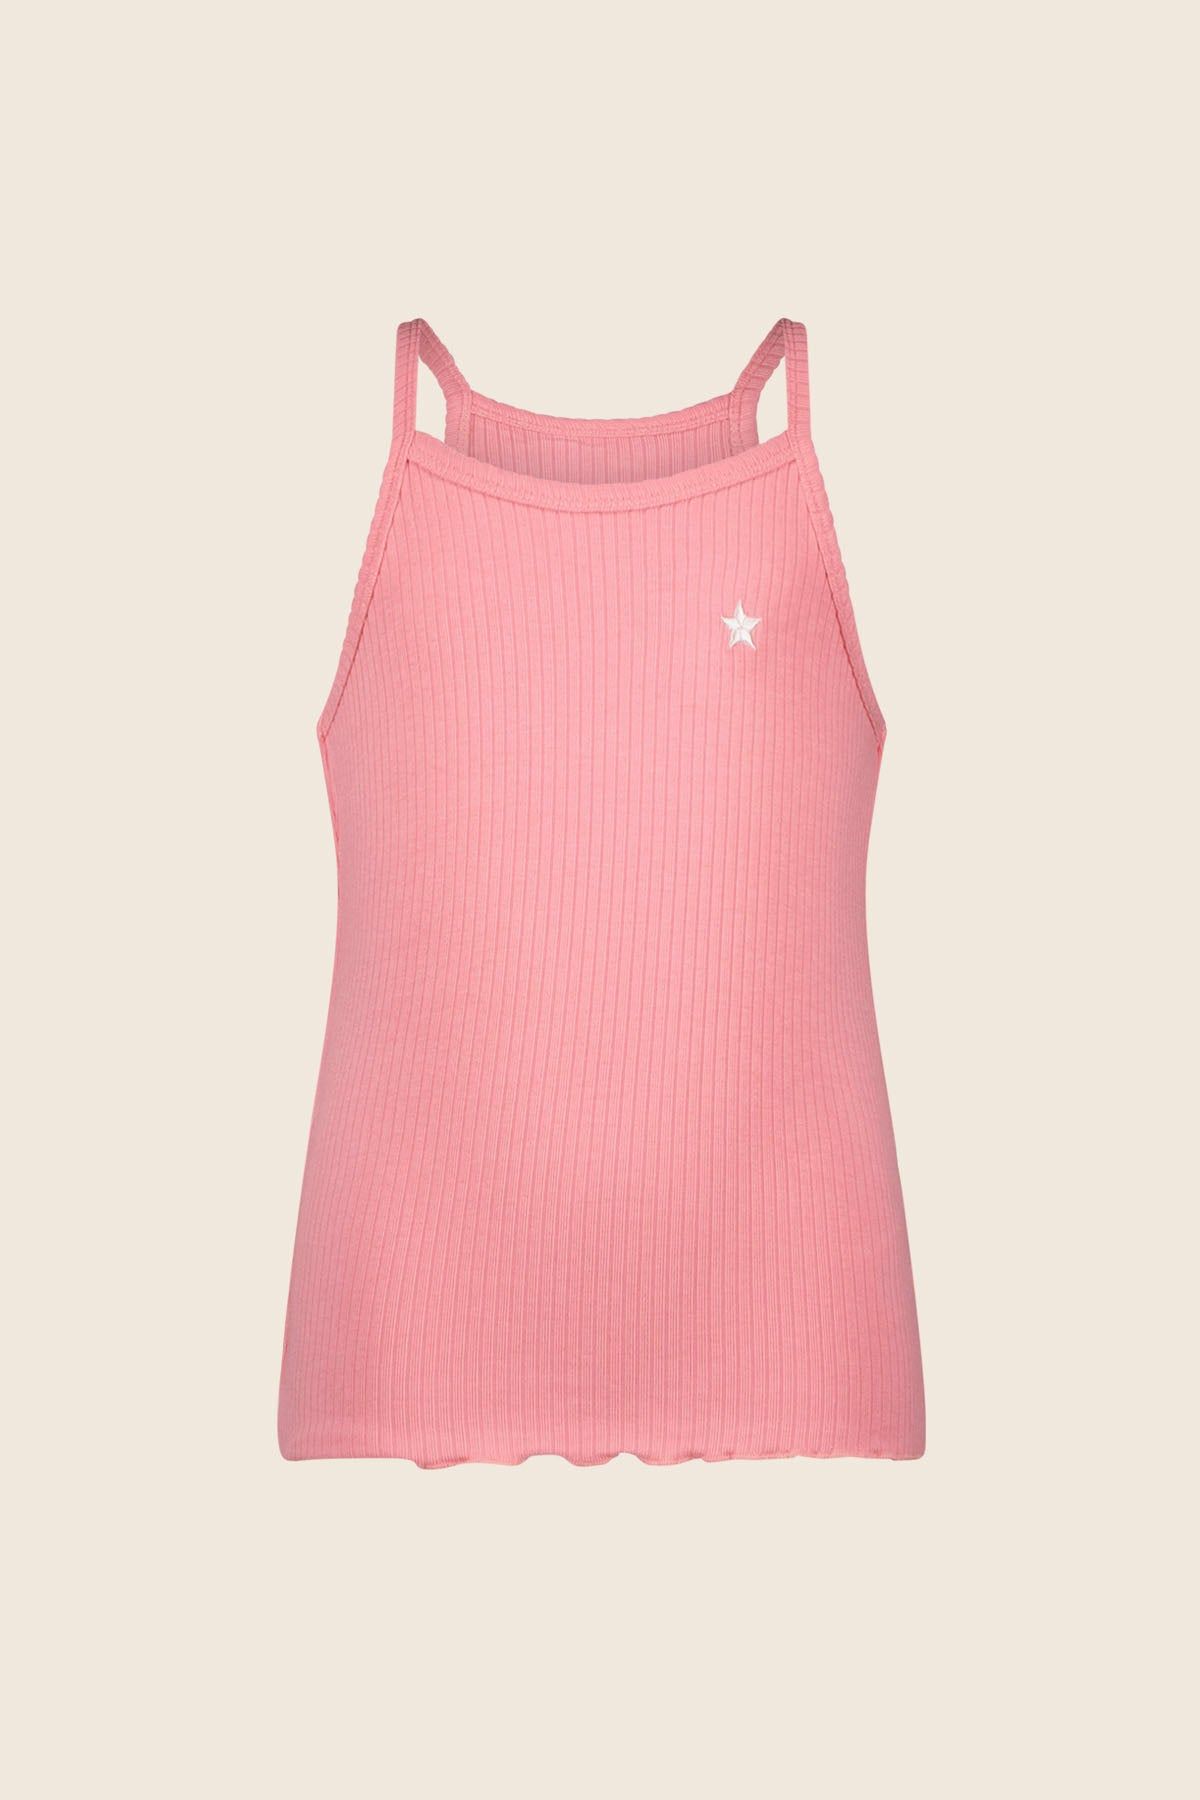 T-Shirt Top GRETA pink